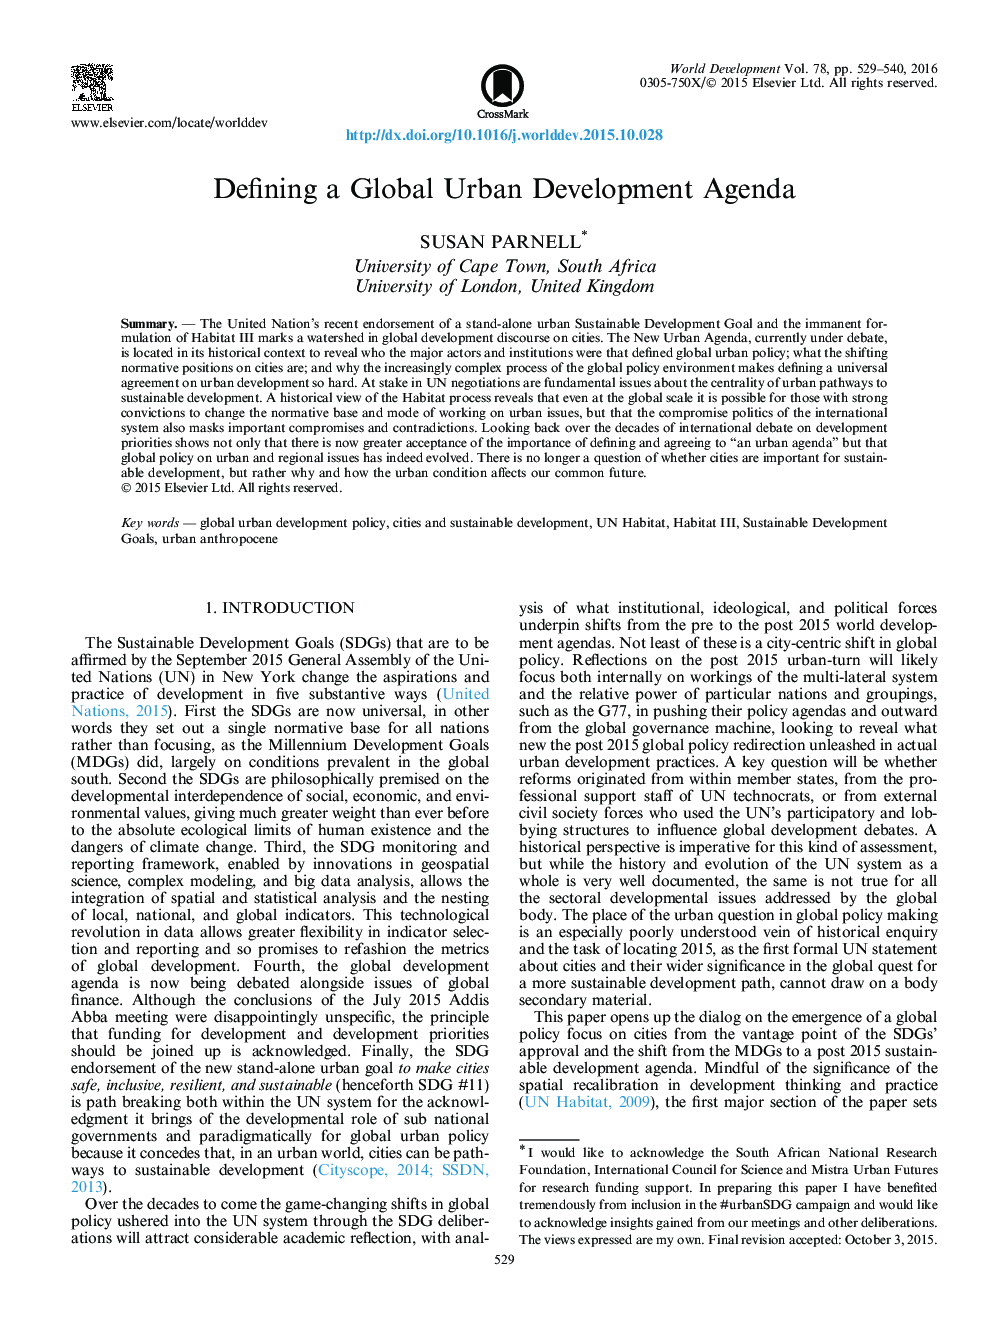 تعریف یک برنامه جهانی توسعه شهری 